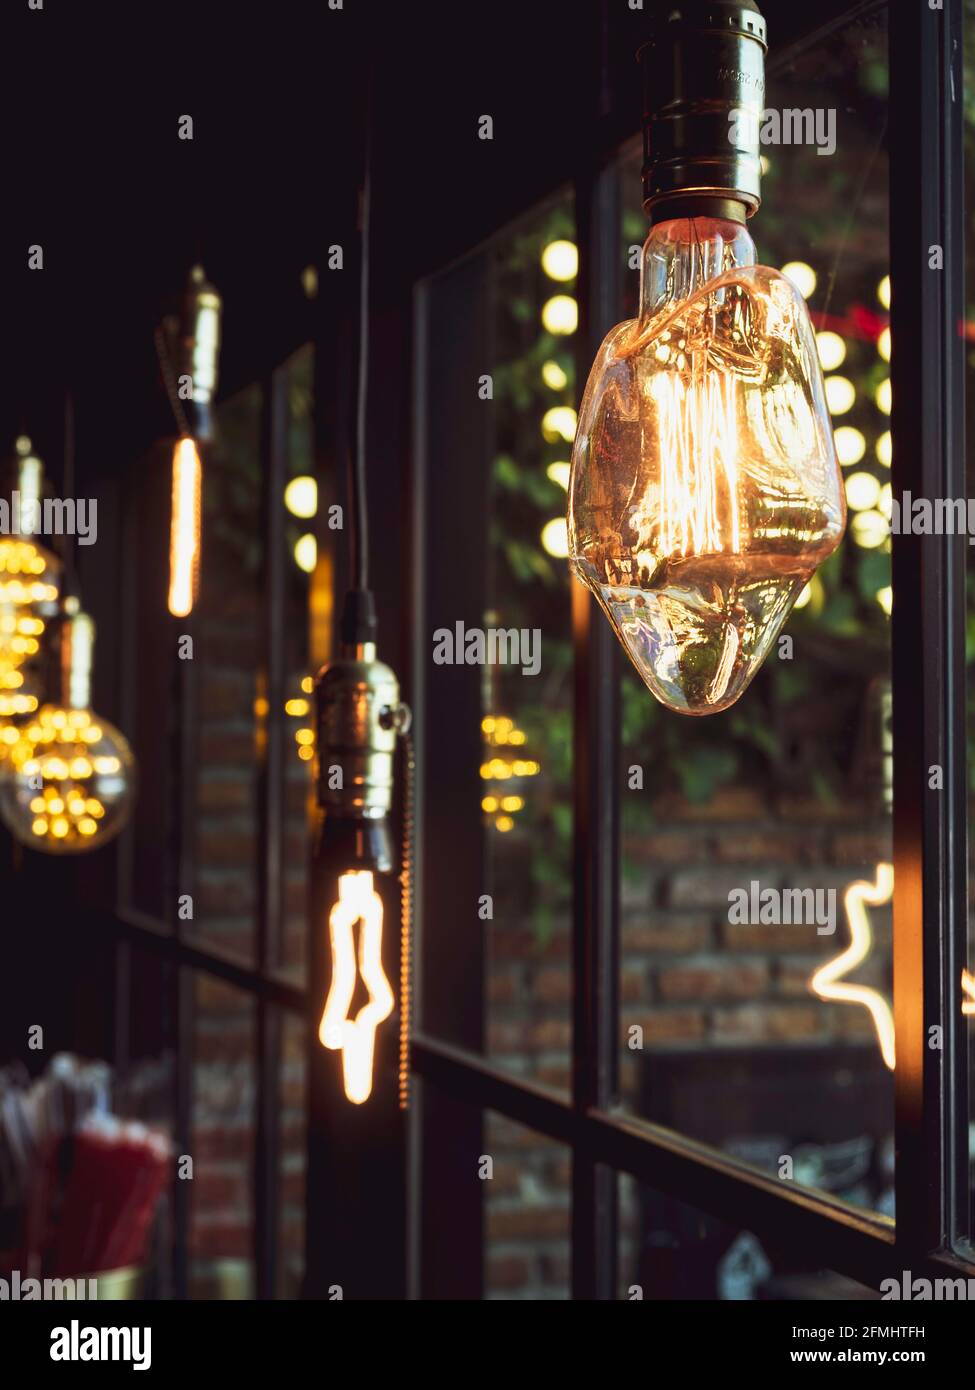 Sternförmige Dekoration von Glühbirnen im Café. Viele LED-Lampen im  Retro-Stil, die im dunklen Hintergrund nahe dem Glasfenster leuchten, im  vertikalen Stil Stockfotografie - Alamy